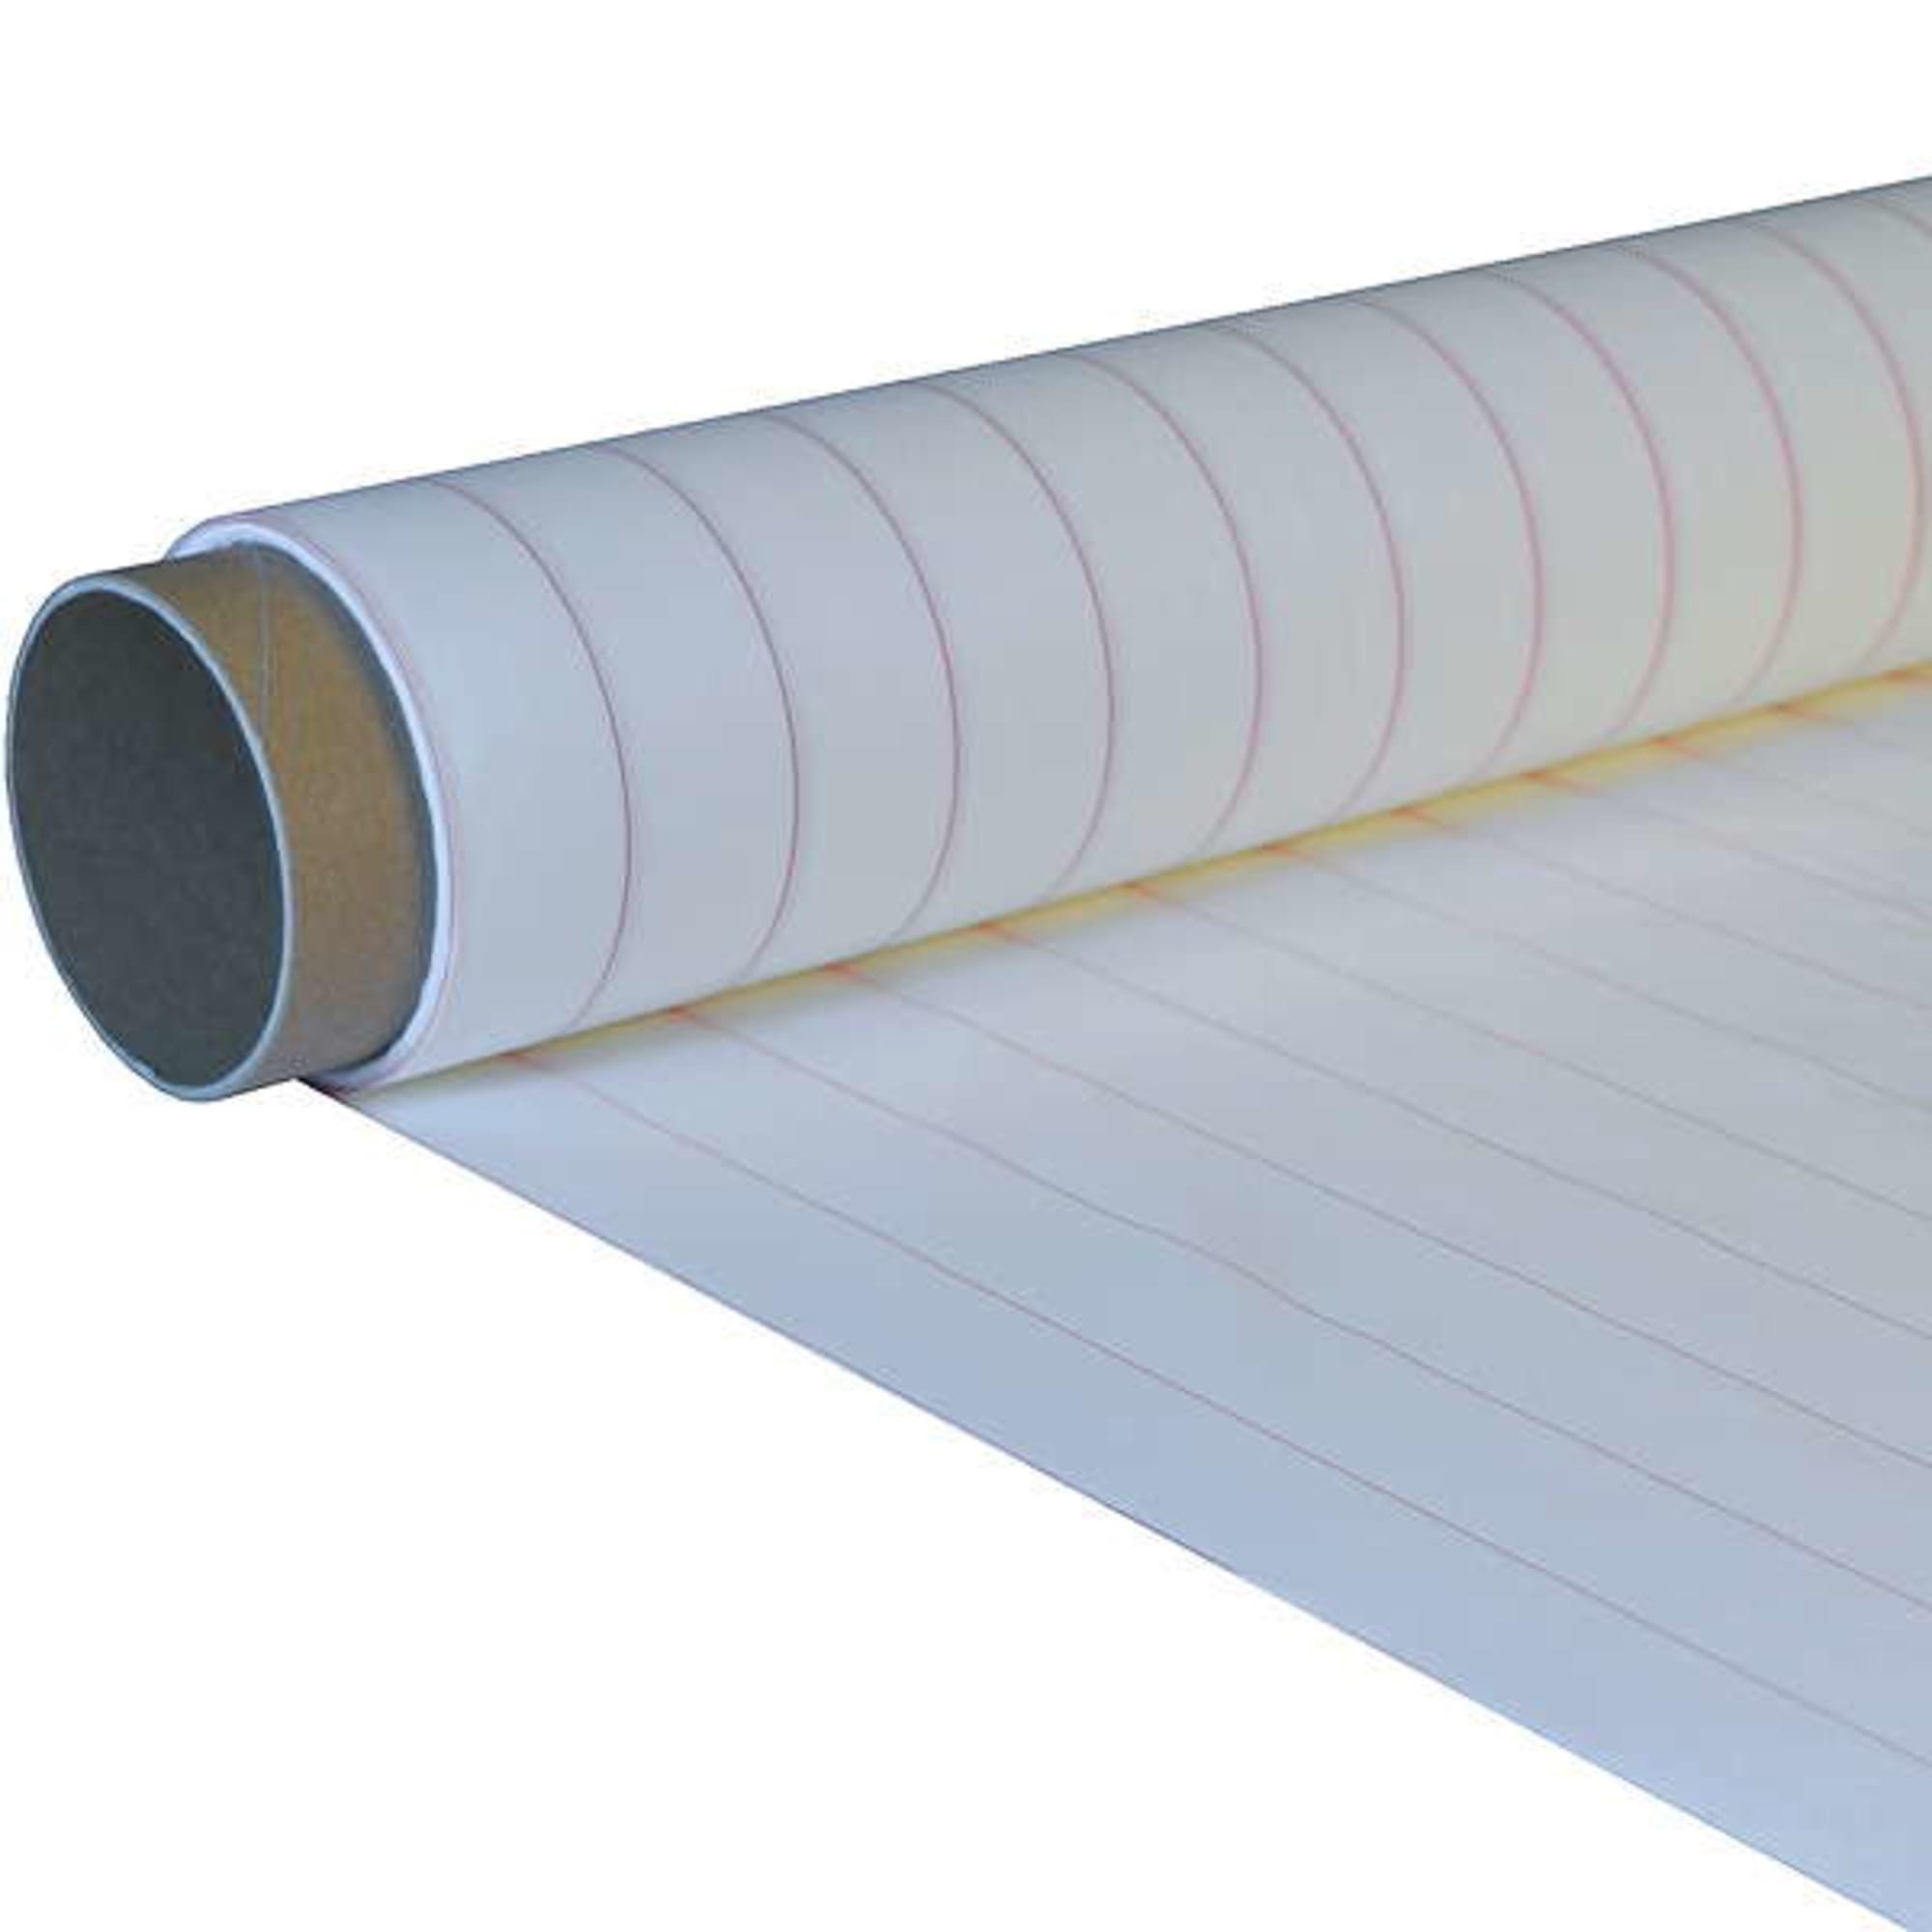 Peel ply 64 g/m² (plain weave) 50 cm , image 2